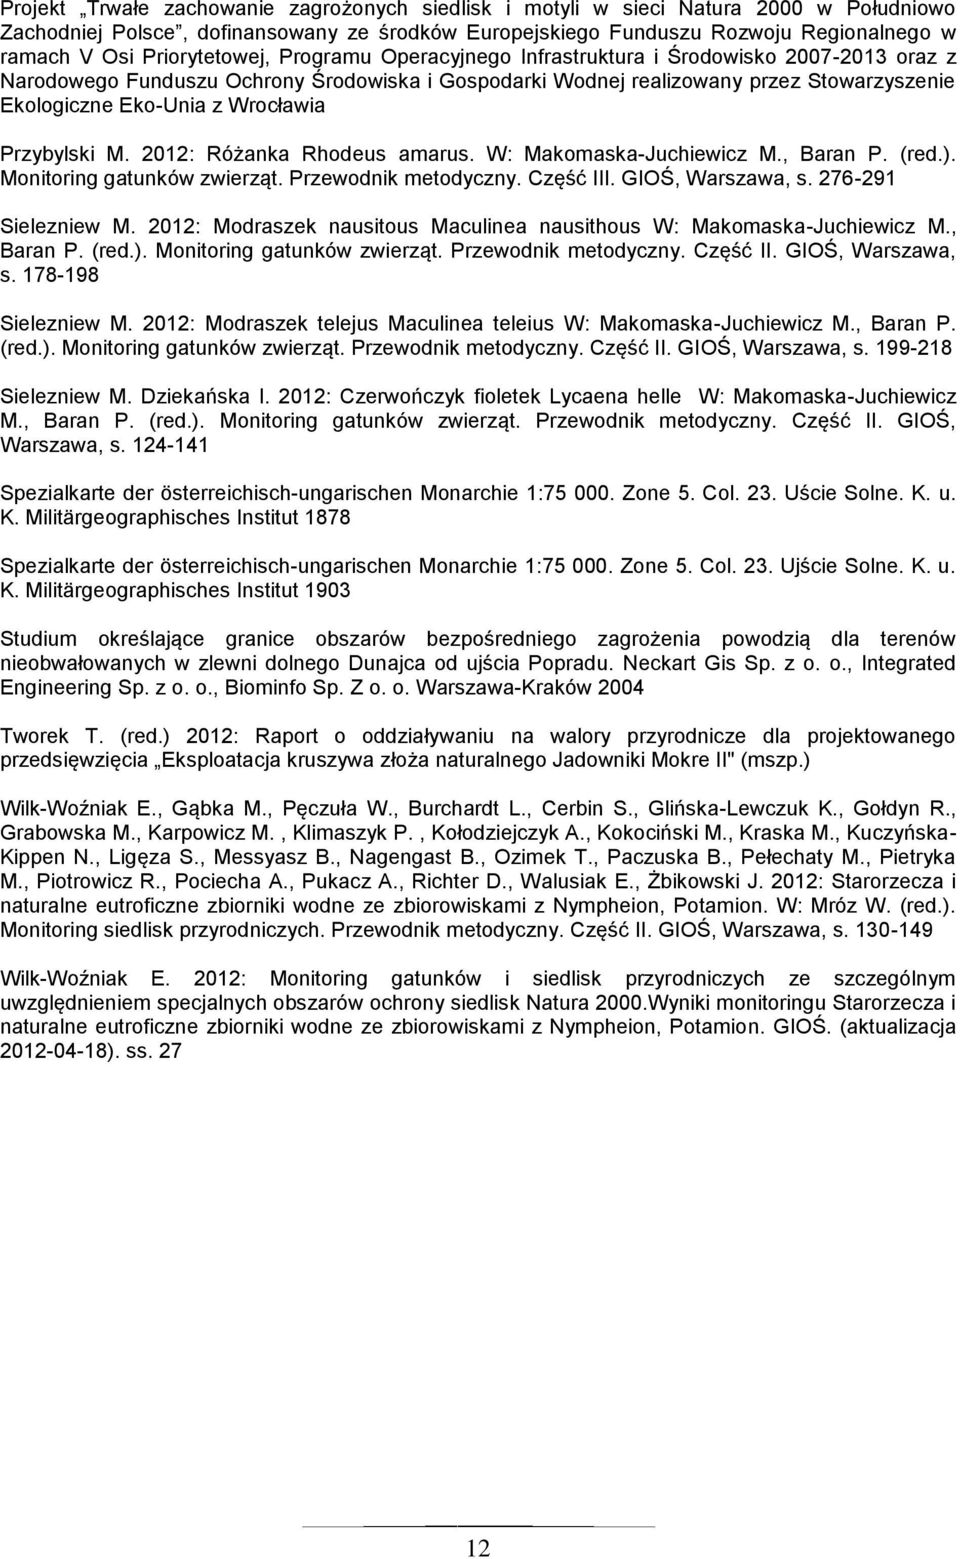 Wrocławia Przybylski M. 2012: Różanka Rhodeus amarus. W: Makomaska-Juchiewicz M., Baran P. (red.). Monitoring gatunków zwierząt. Przewodnik metodyczny. Część III. GIOŚ, Warszawa, s.